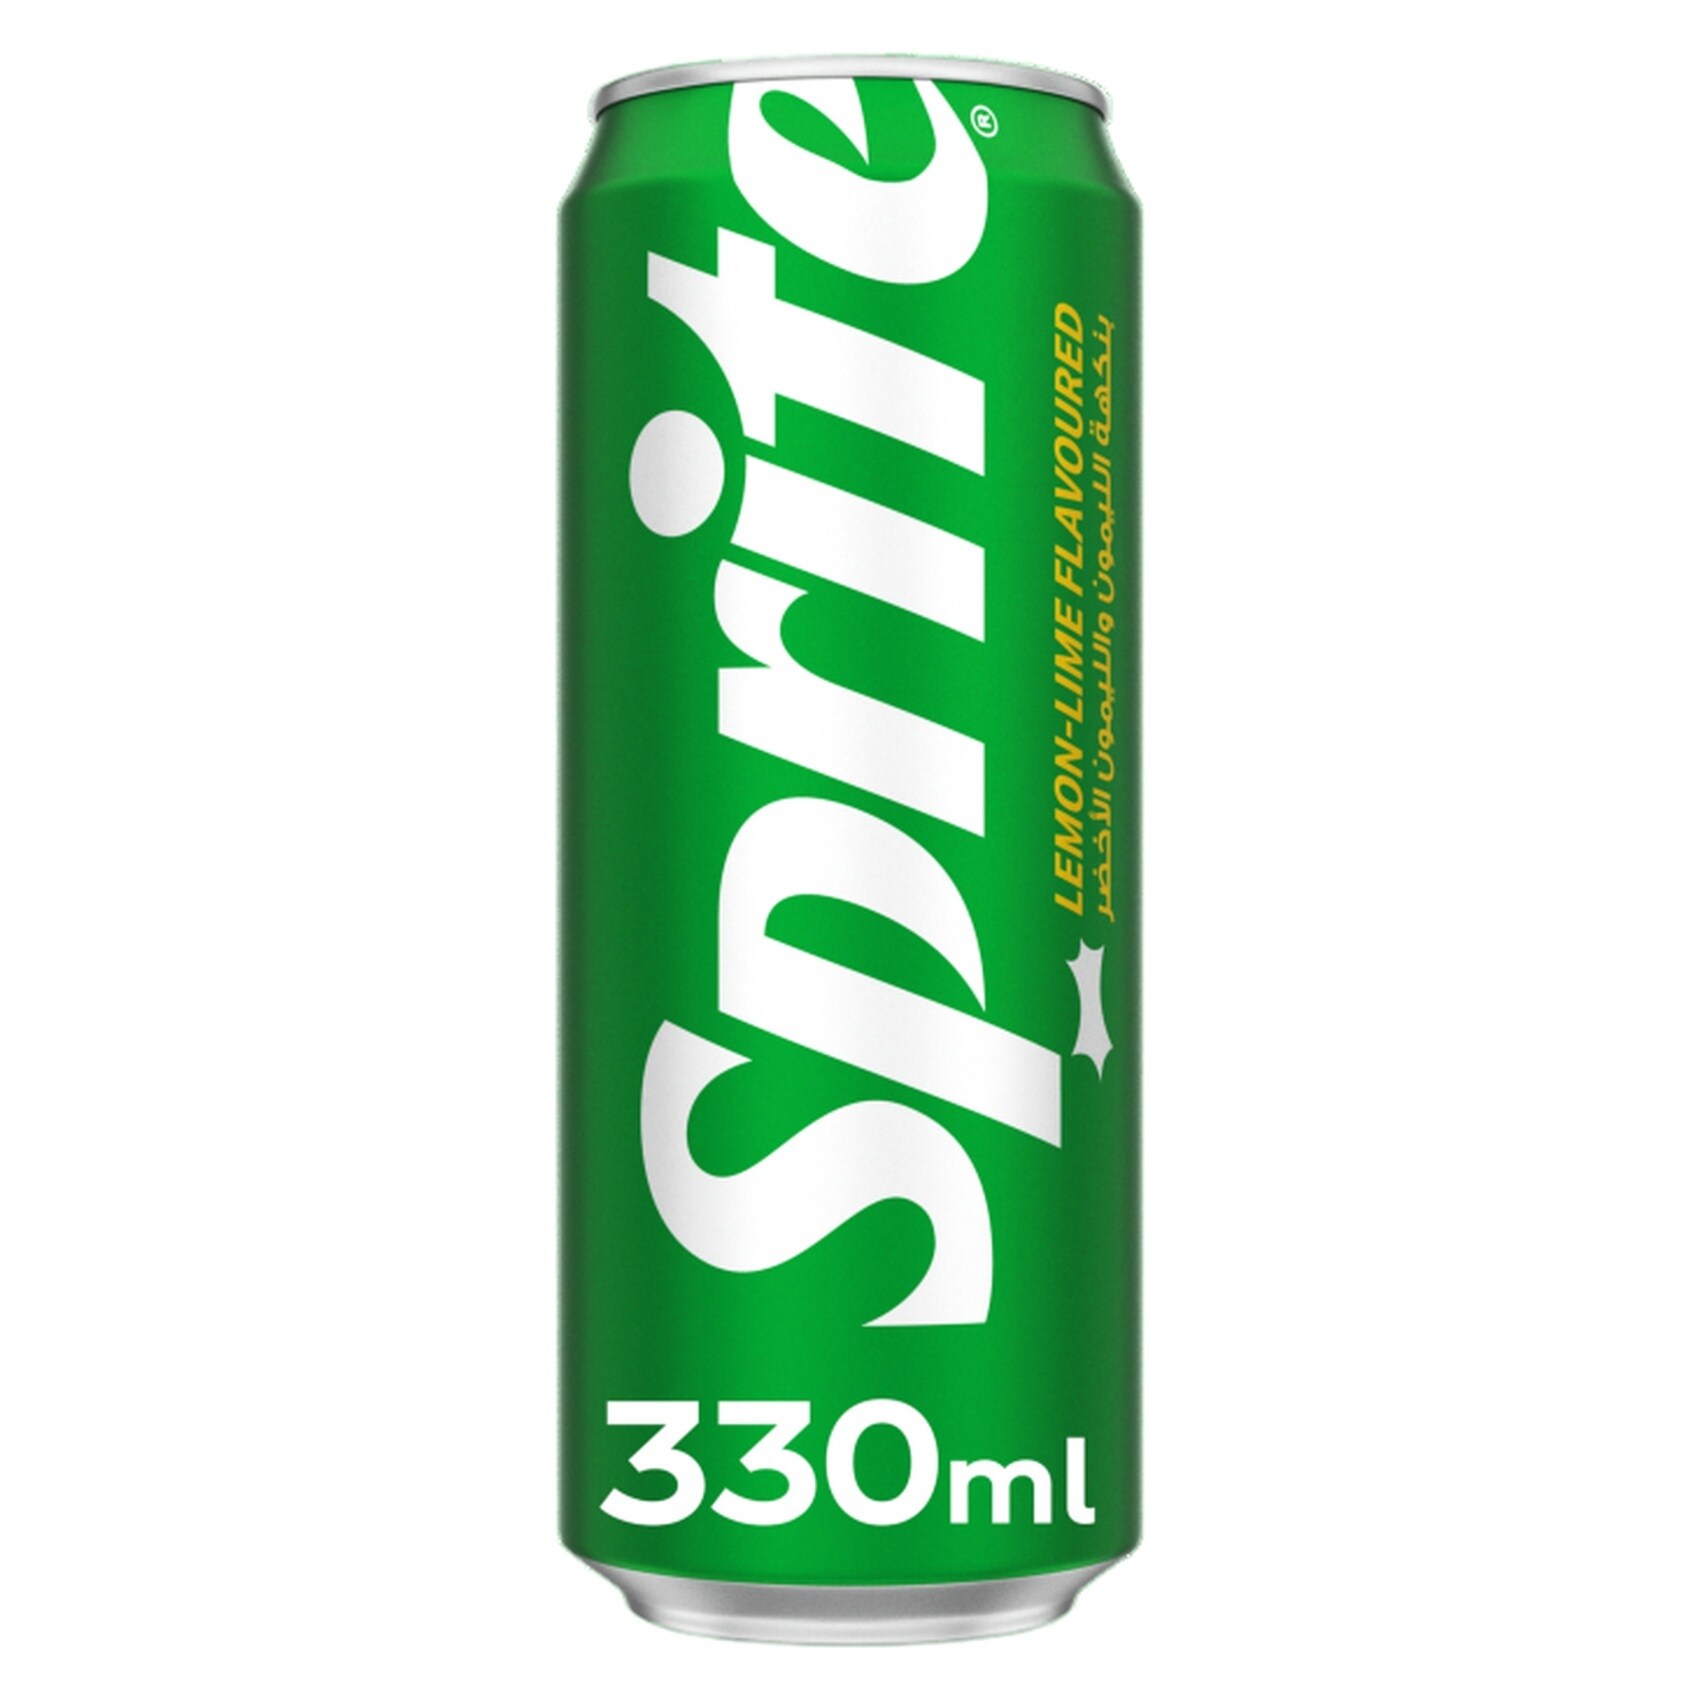 Buy Sprite Regular Lemon Lime Flavored Carbonated Soft Drink Can 330ml  Online - Shop Beverages on Carrefour UAE